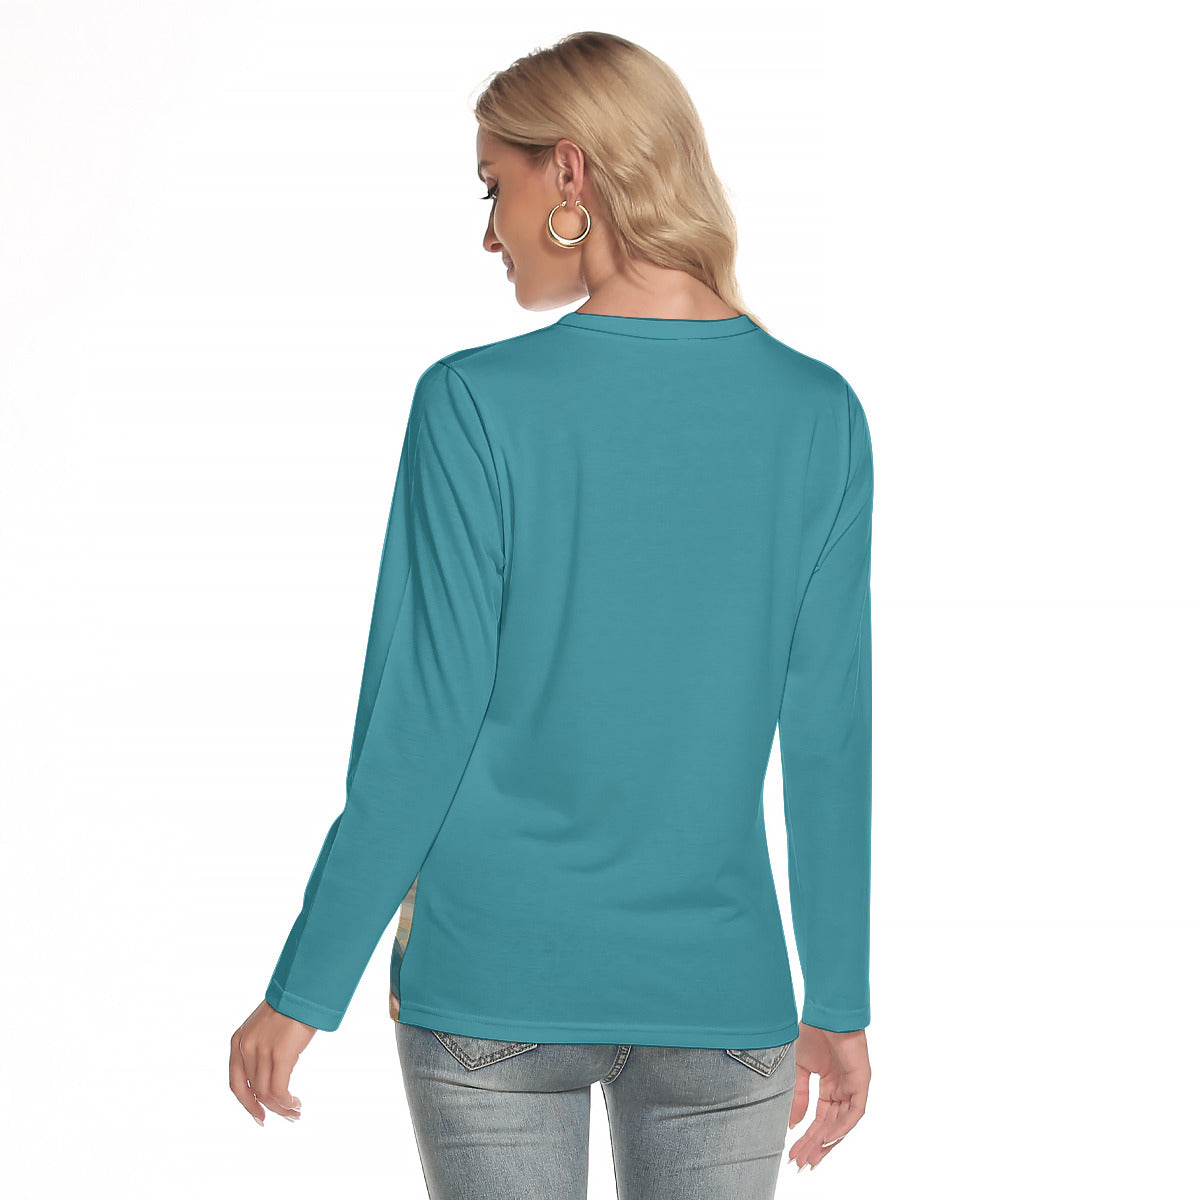 Xaio -- Women's O-neck Long Sleeve T-shirt